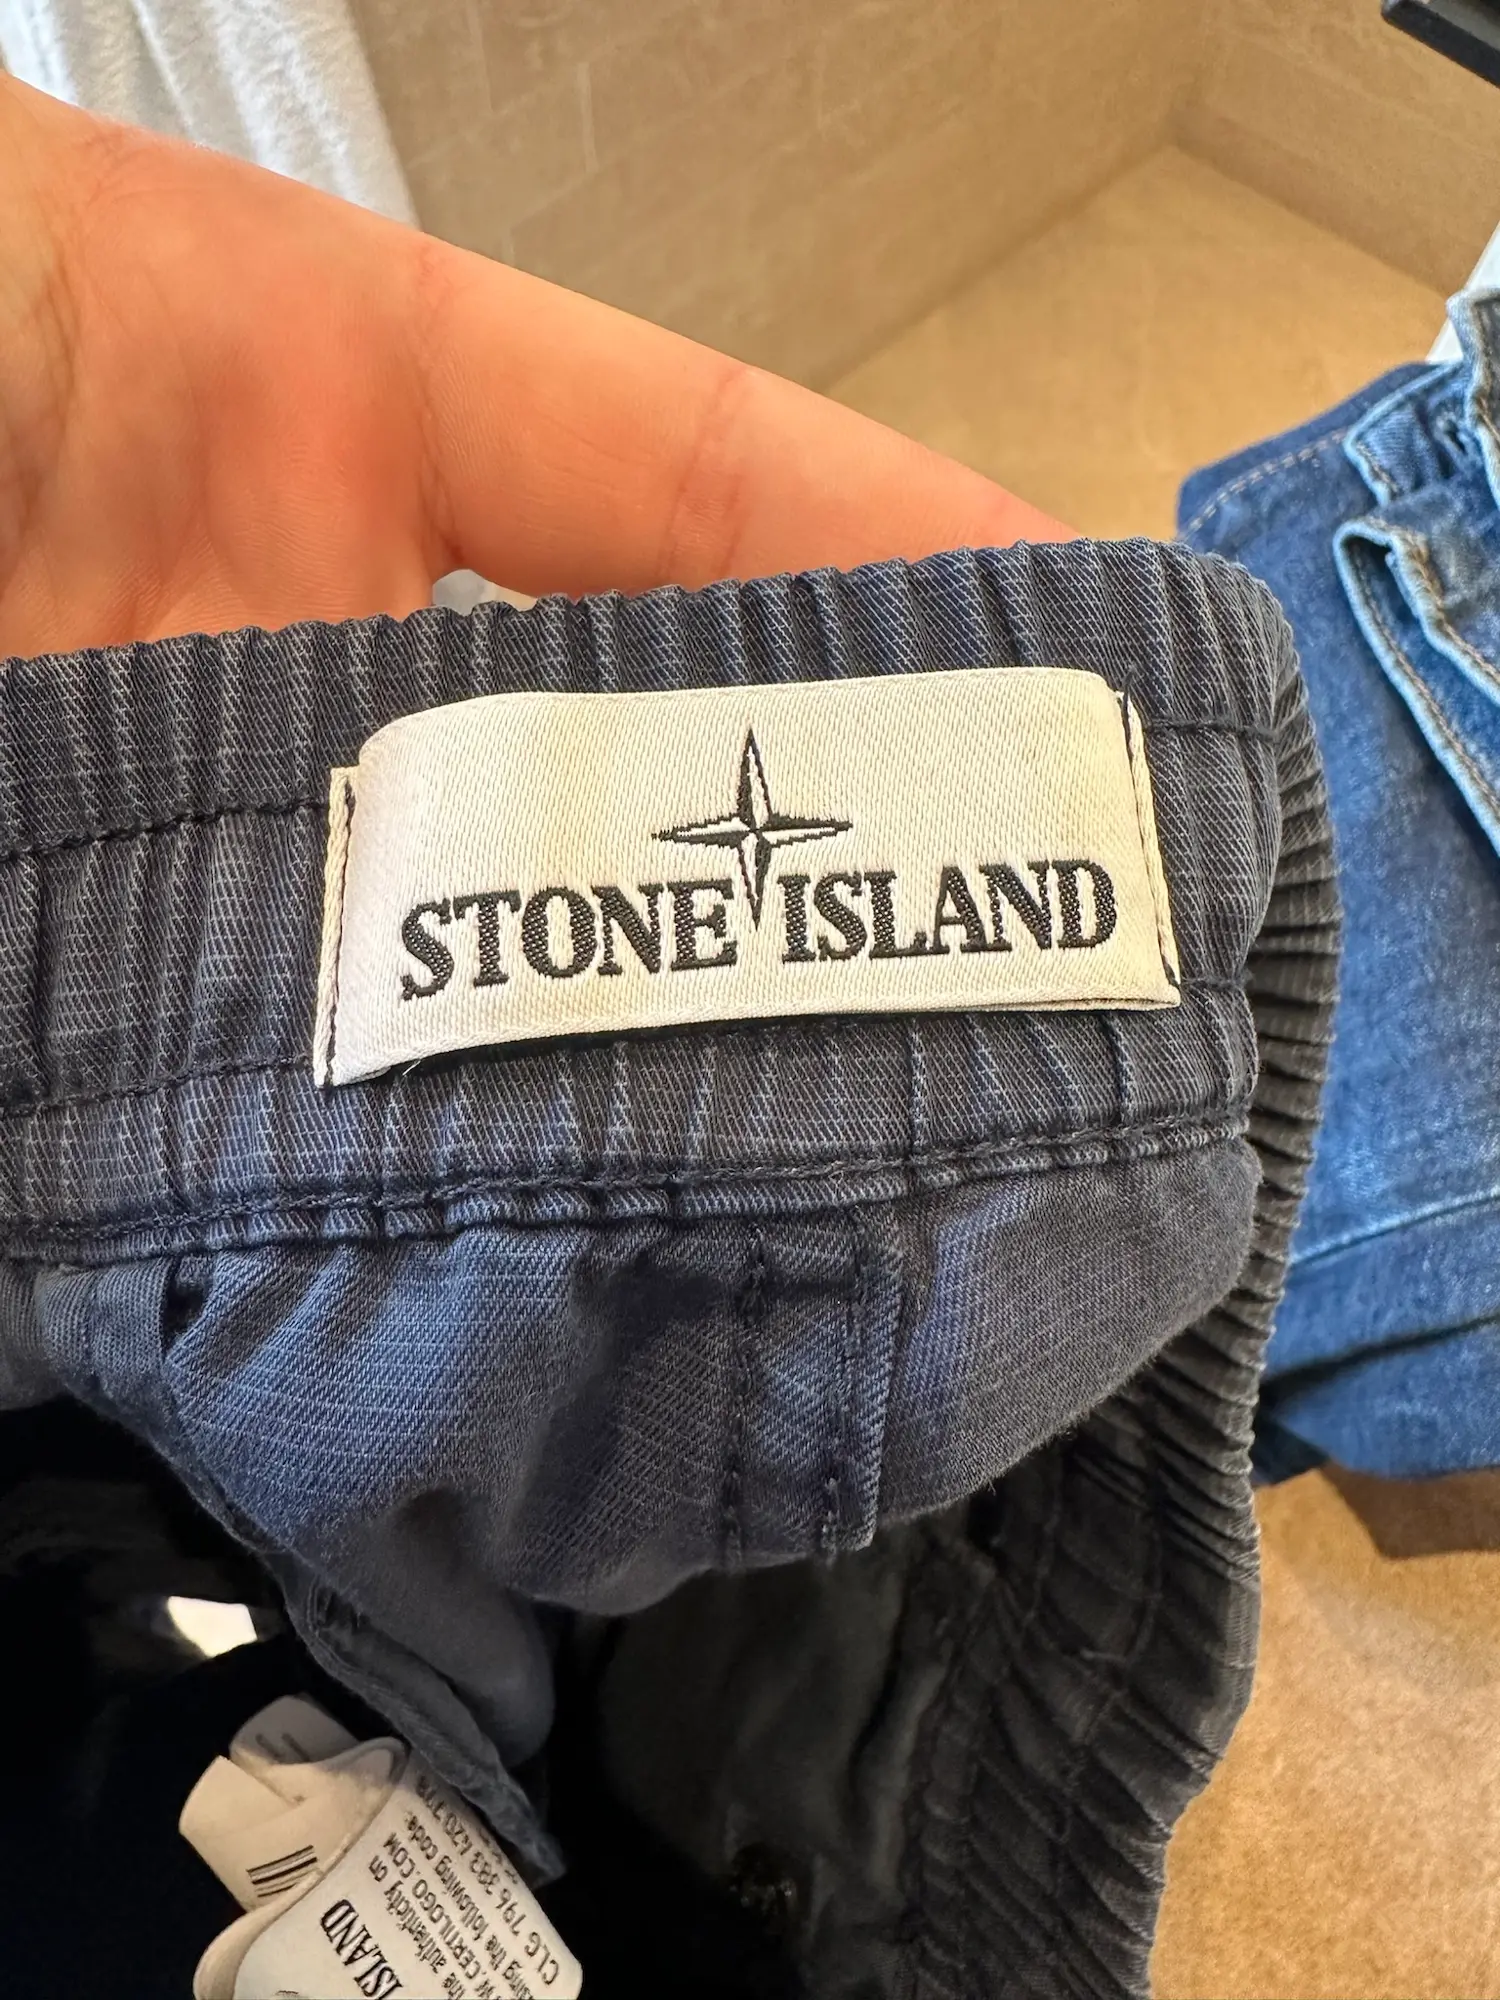 Stone Island shorts